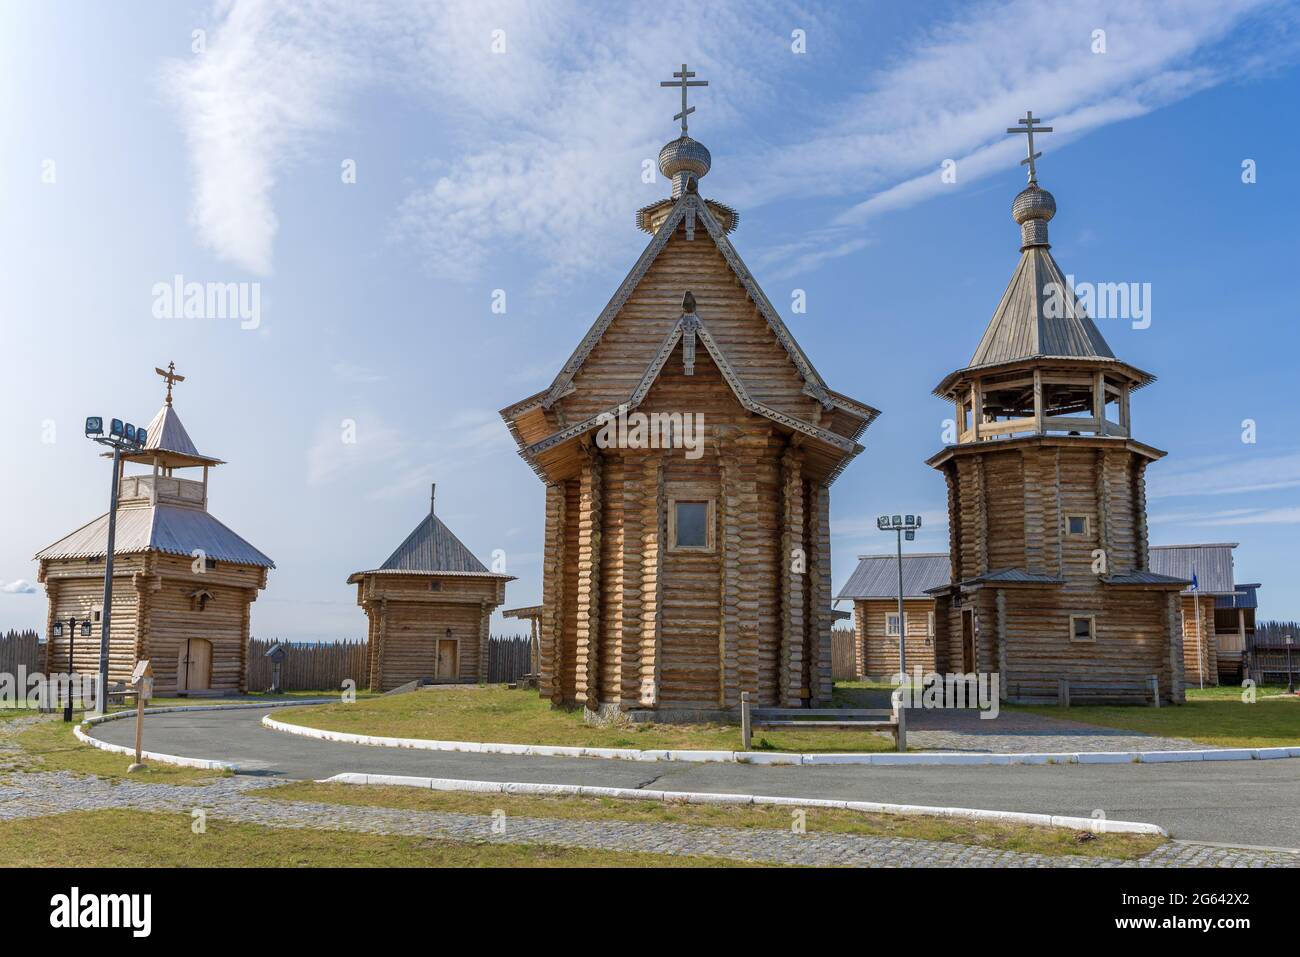 SALEHARD, RUSSIE - 29 AOÛT 2018 : églises en bois dans le complexe historique et architectural 'Obdorsky Ostrog' le jour ensoleillé d'août Banque D'Images